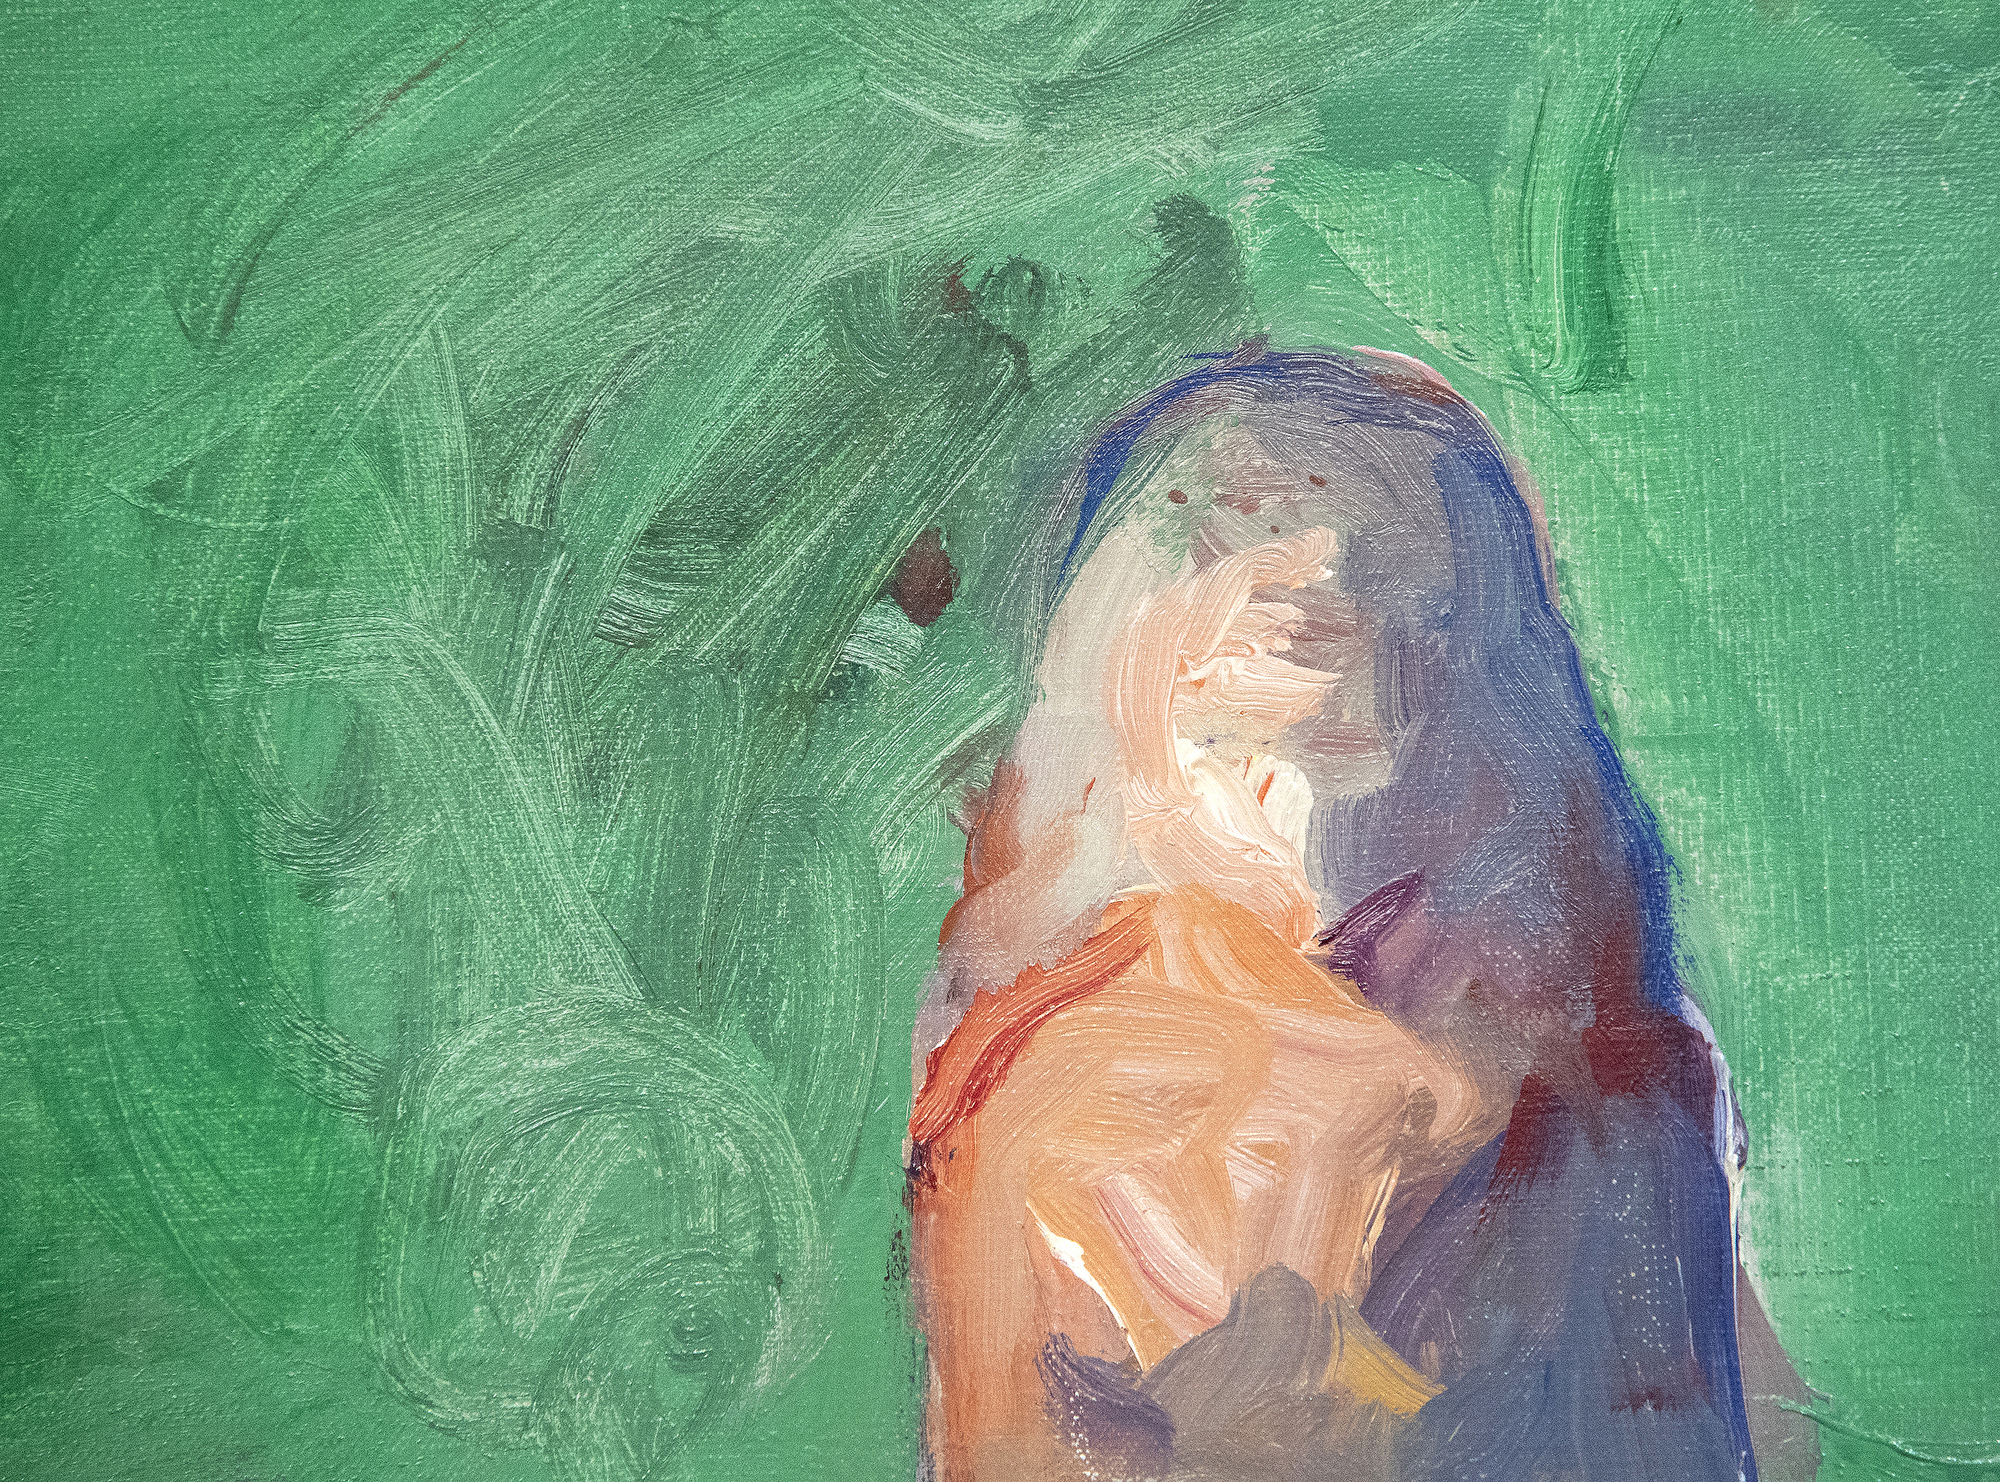 ネイサン・オリヴェラは、カリフォルニアのベイエリアの具象画家たちとしばしば結びつけられているが、実際には、彼の作品にはウィレム・デ・クーニング、アルベルト・ジャコメッティ、フランシス・ベーコンへの関心が見て取れる。これらの影響は、《絨毯から足を踏み出す裸婦》の際立った特徴となっている。オリヴェイラが30代前半のときに描かれたこの作品は、まさに即興的なスタイルで描かれた孤立した人物の心を揺さぶる描写で、彼の初期の名声を確立した。オリヴェイラの晩年の作品は、視覚的記憶を描き、存在感の希薄な具象を創り出すという挑戦に関するデ・クーニングの影響力のあるコメントを反映している。